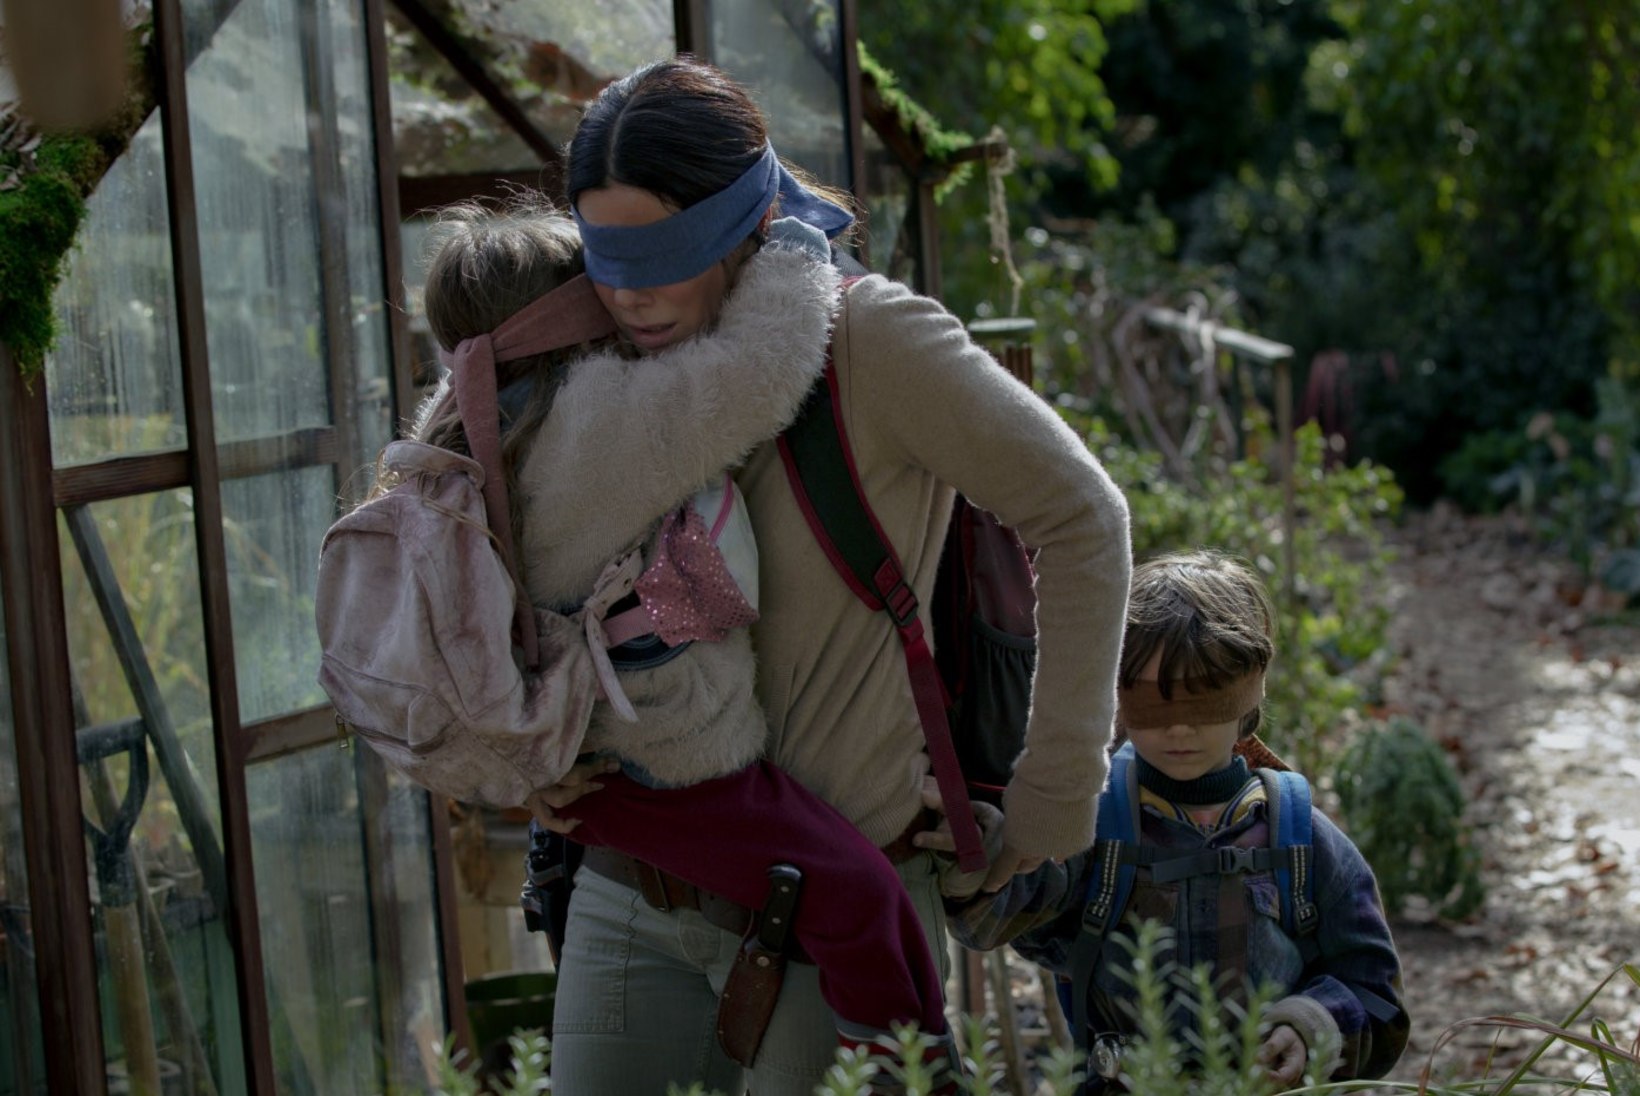 ARVUSTUS | „Bird Box“ – film, mis tekitab inimestes tahte endale haiget teha